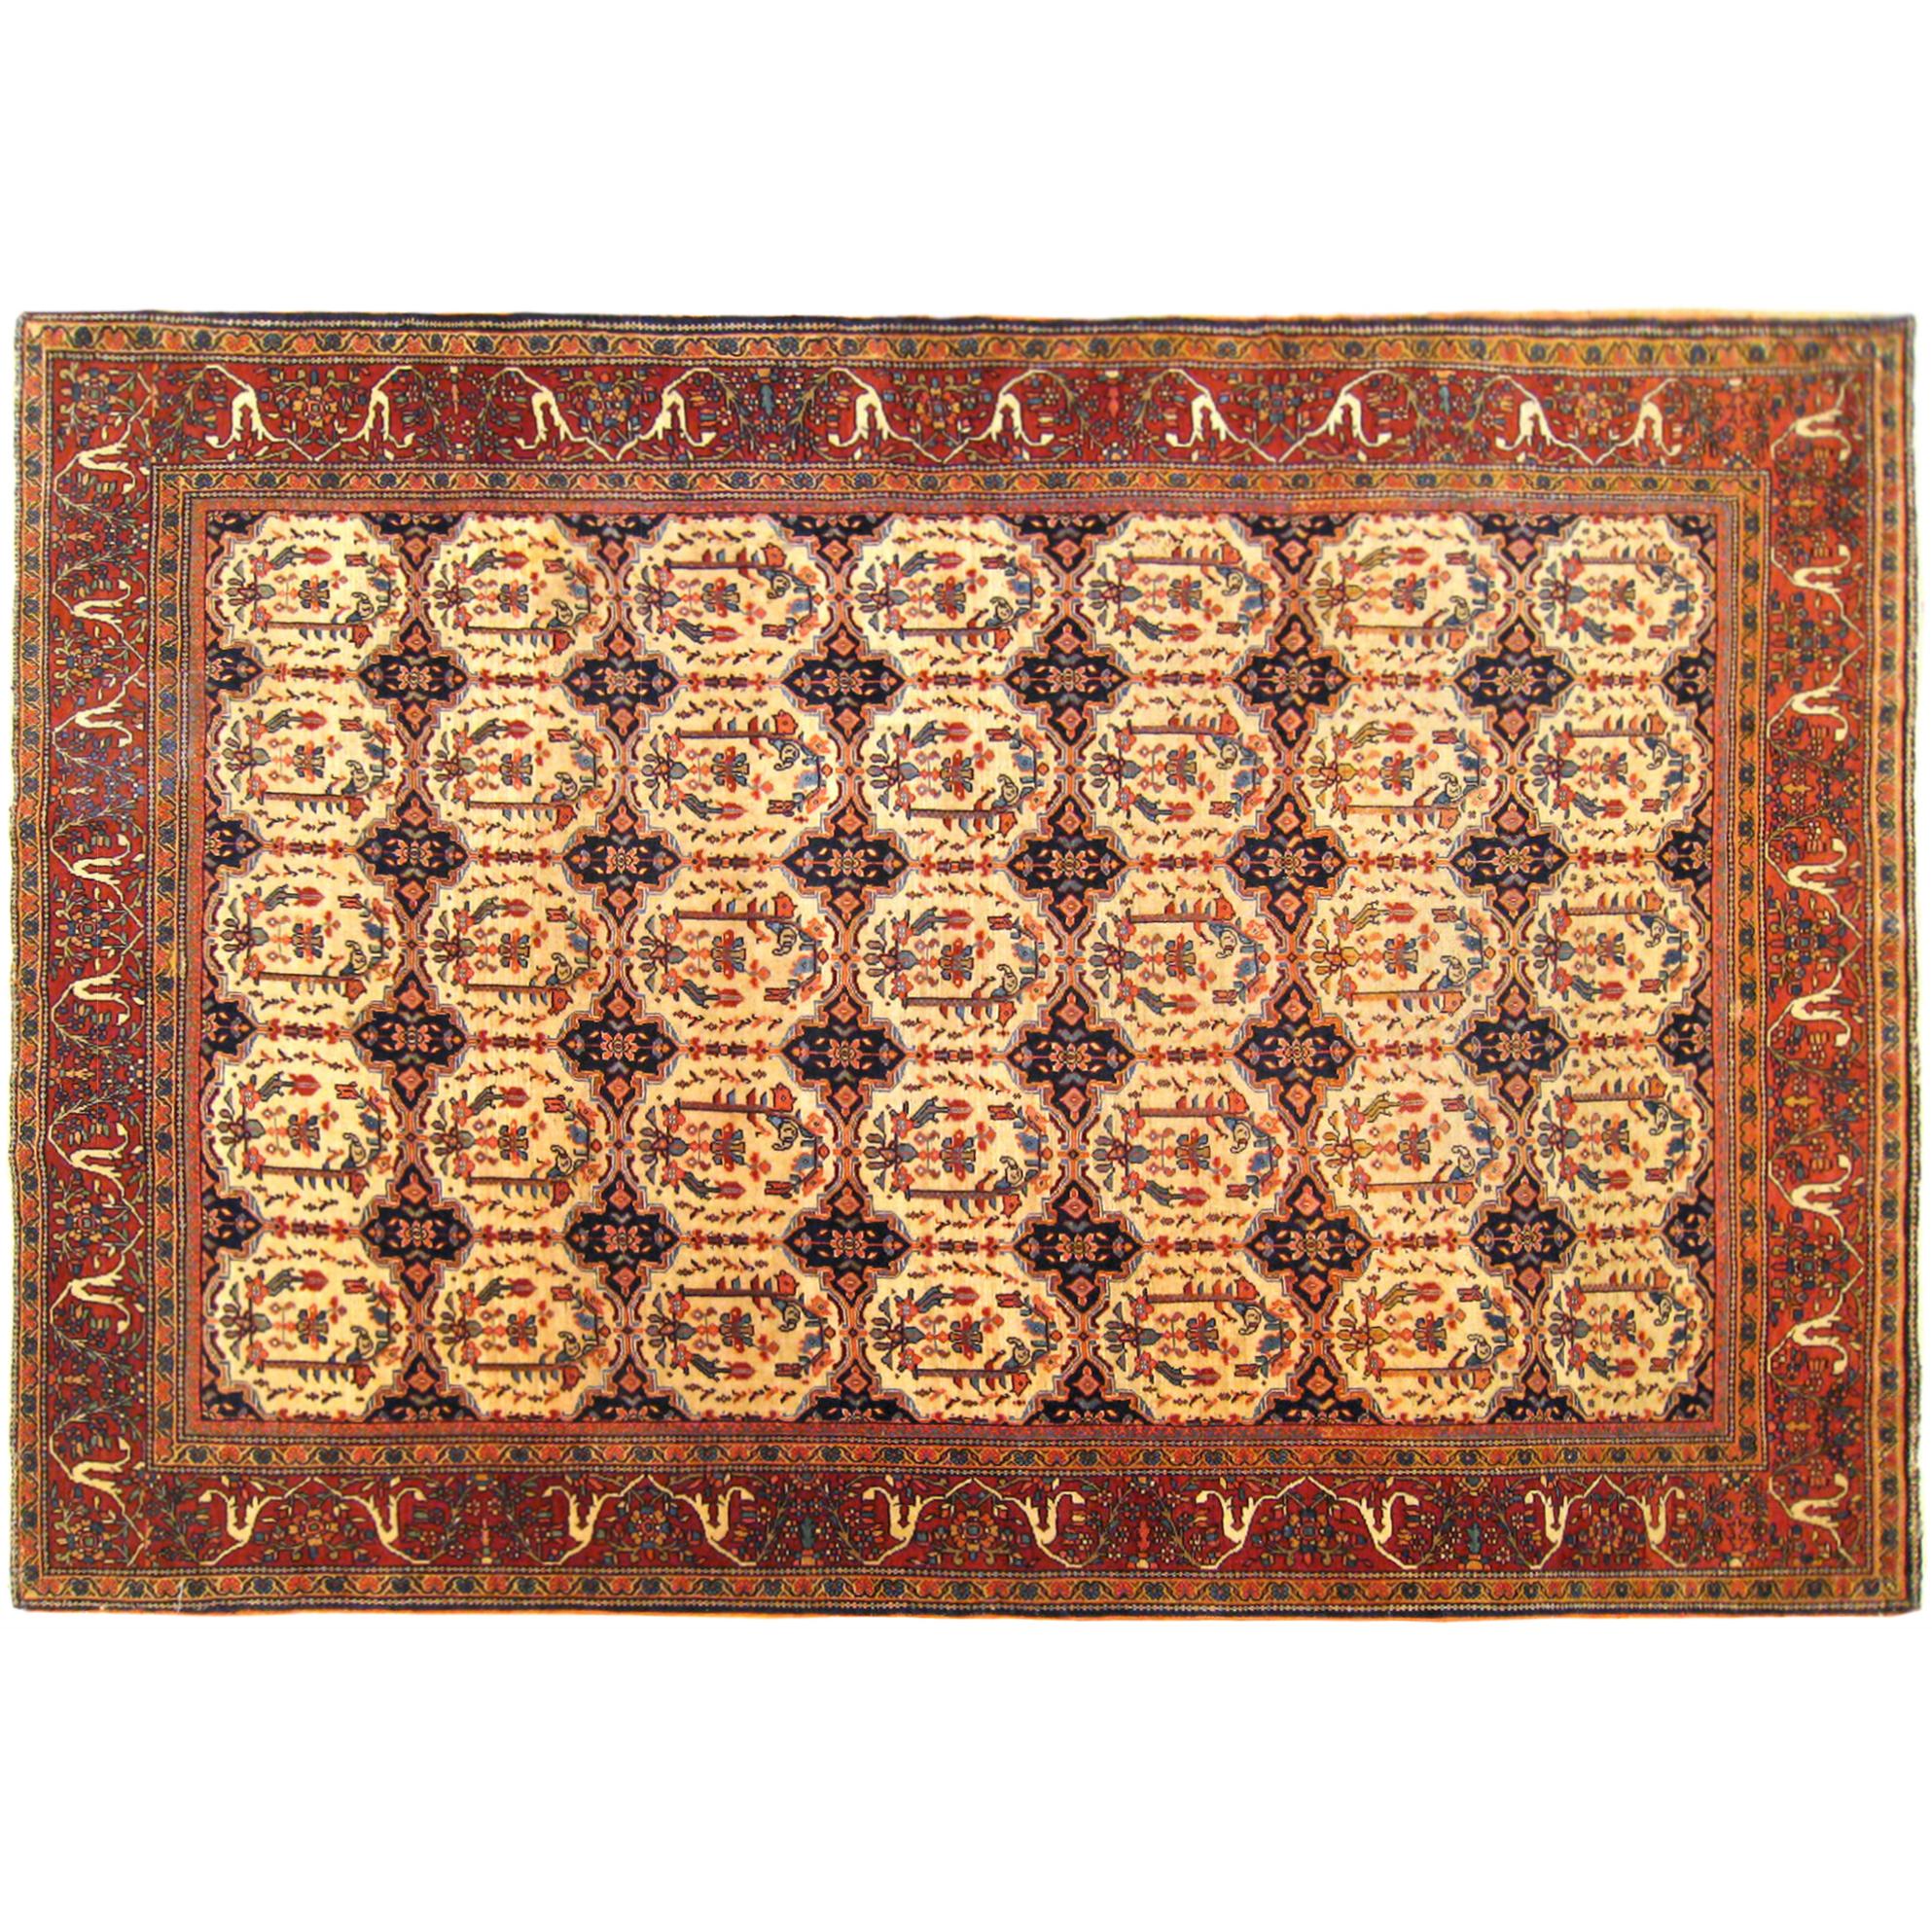 Antiker persischer Ferahan Sarouk- Orientalischer Teppich in Kleinformat mit elfenbeinfarbenen Kreisen, antik